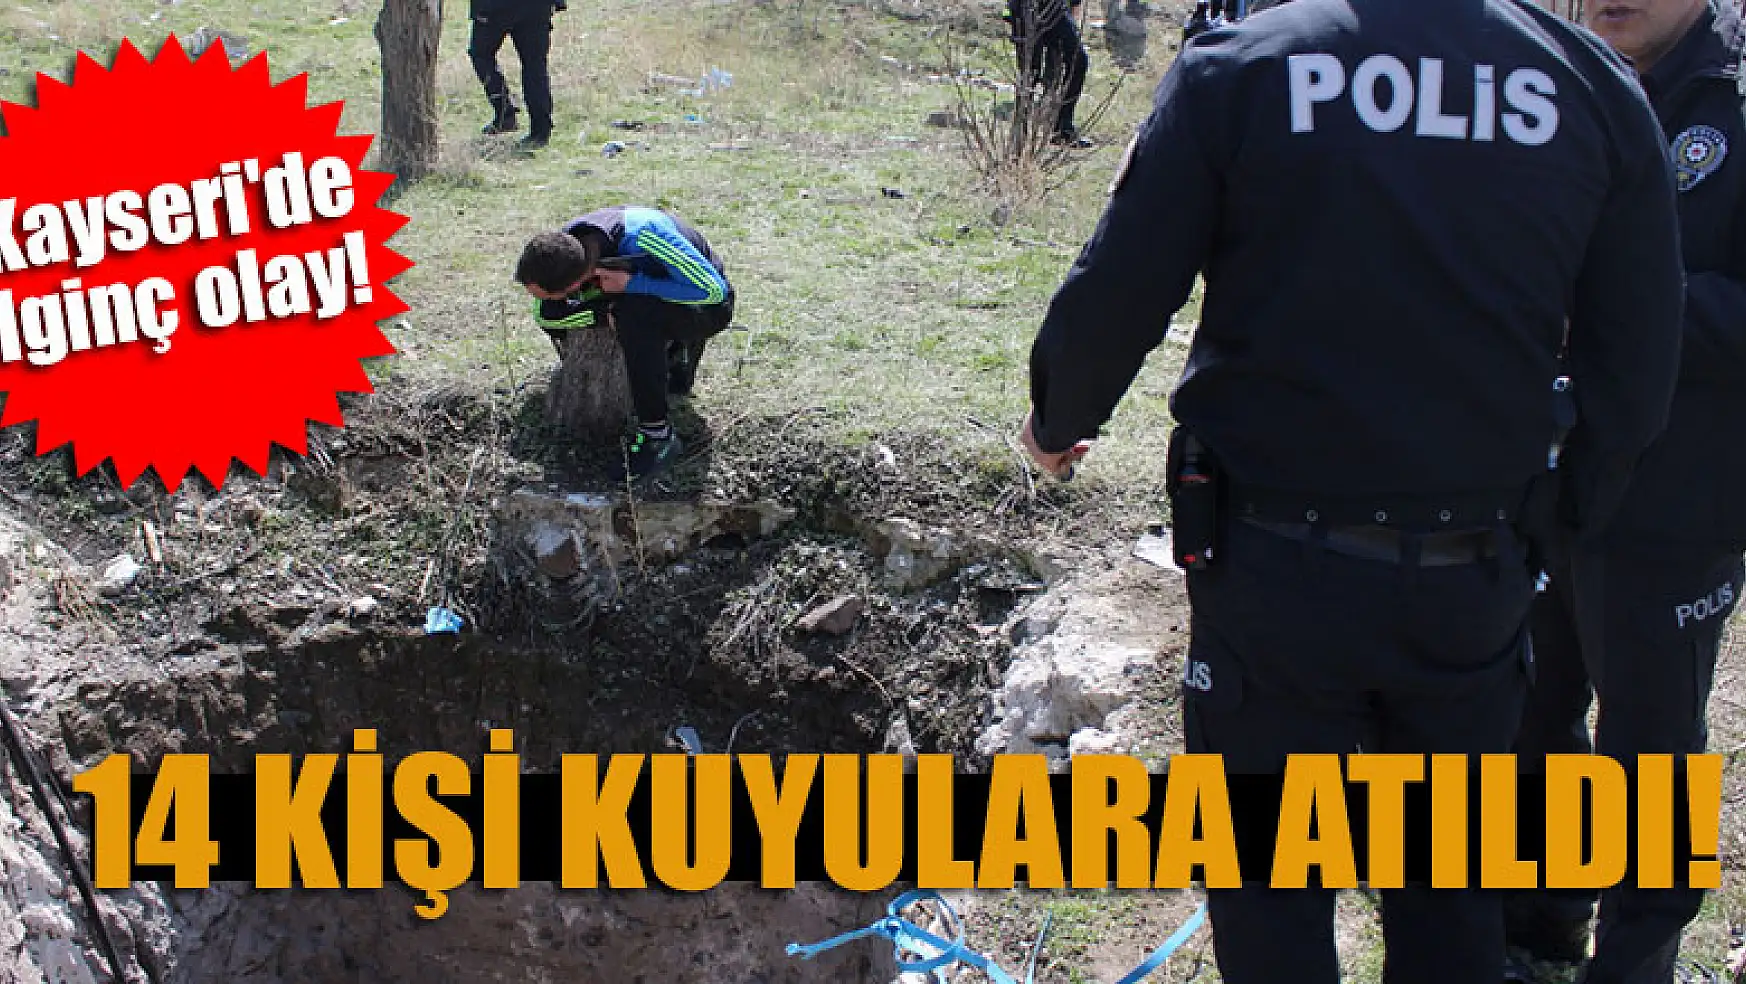 Kayseri'de ilginç olay 14 kişi kuyulara atıldı